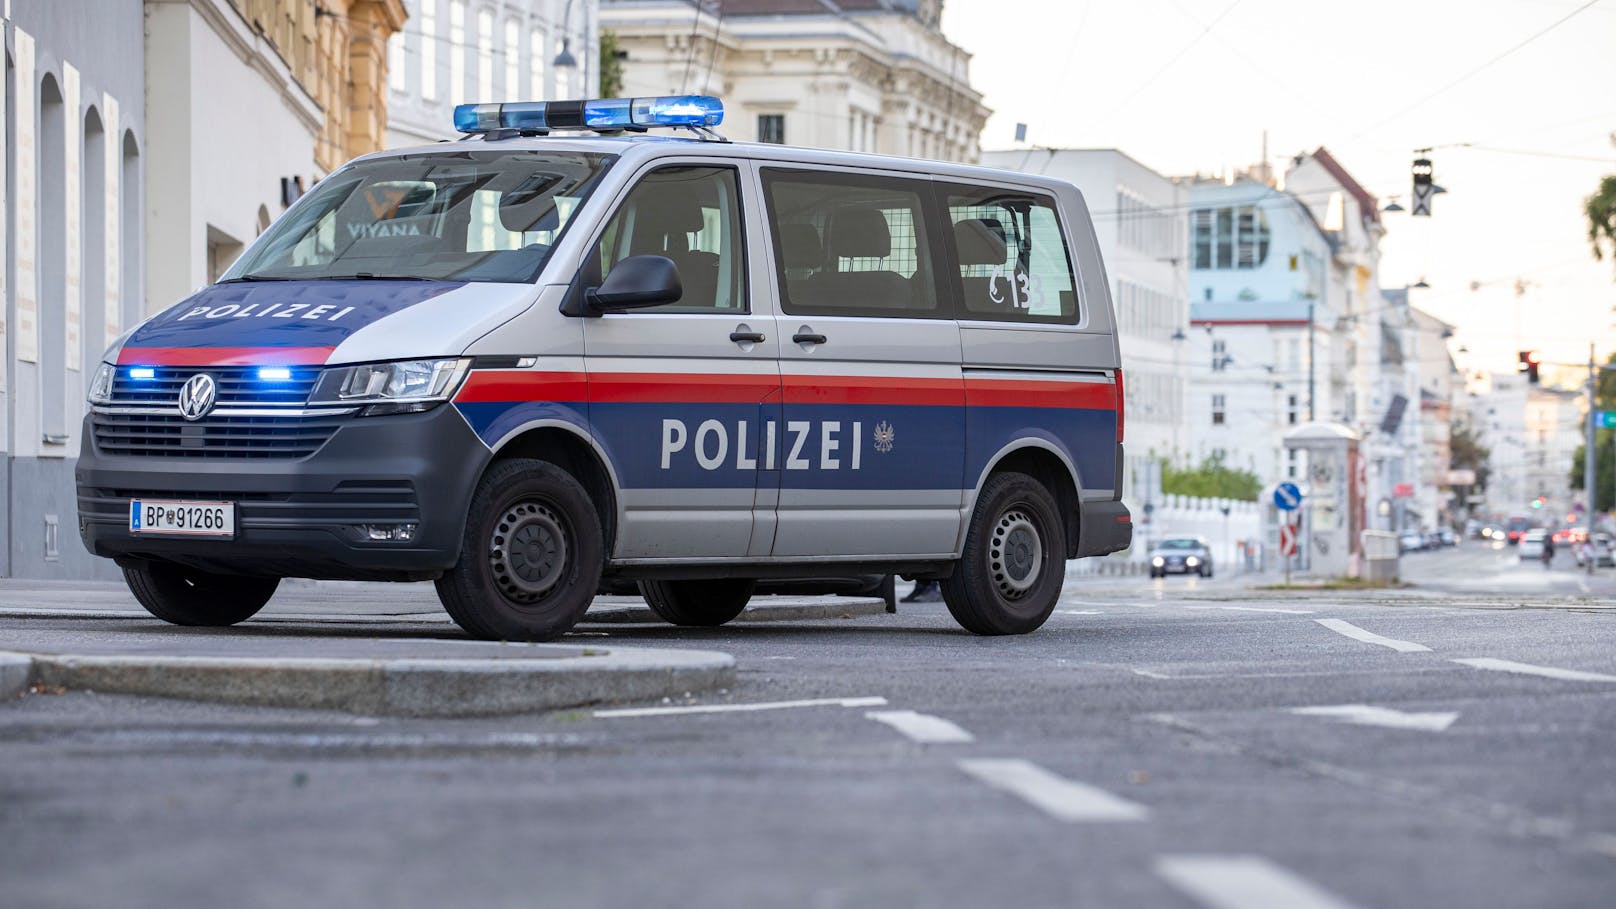 "Briefkästen leeren!" Wiener Polizei warnt alle Bürger